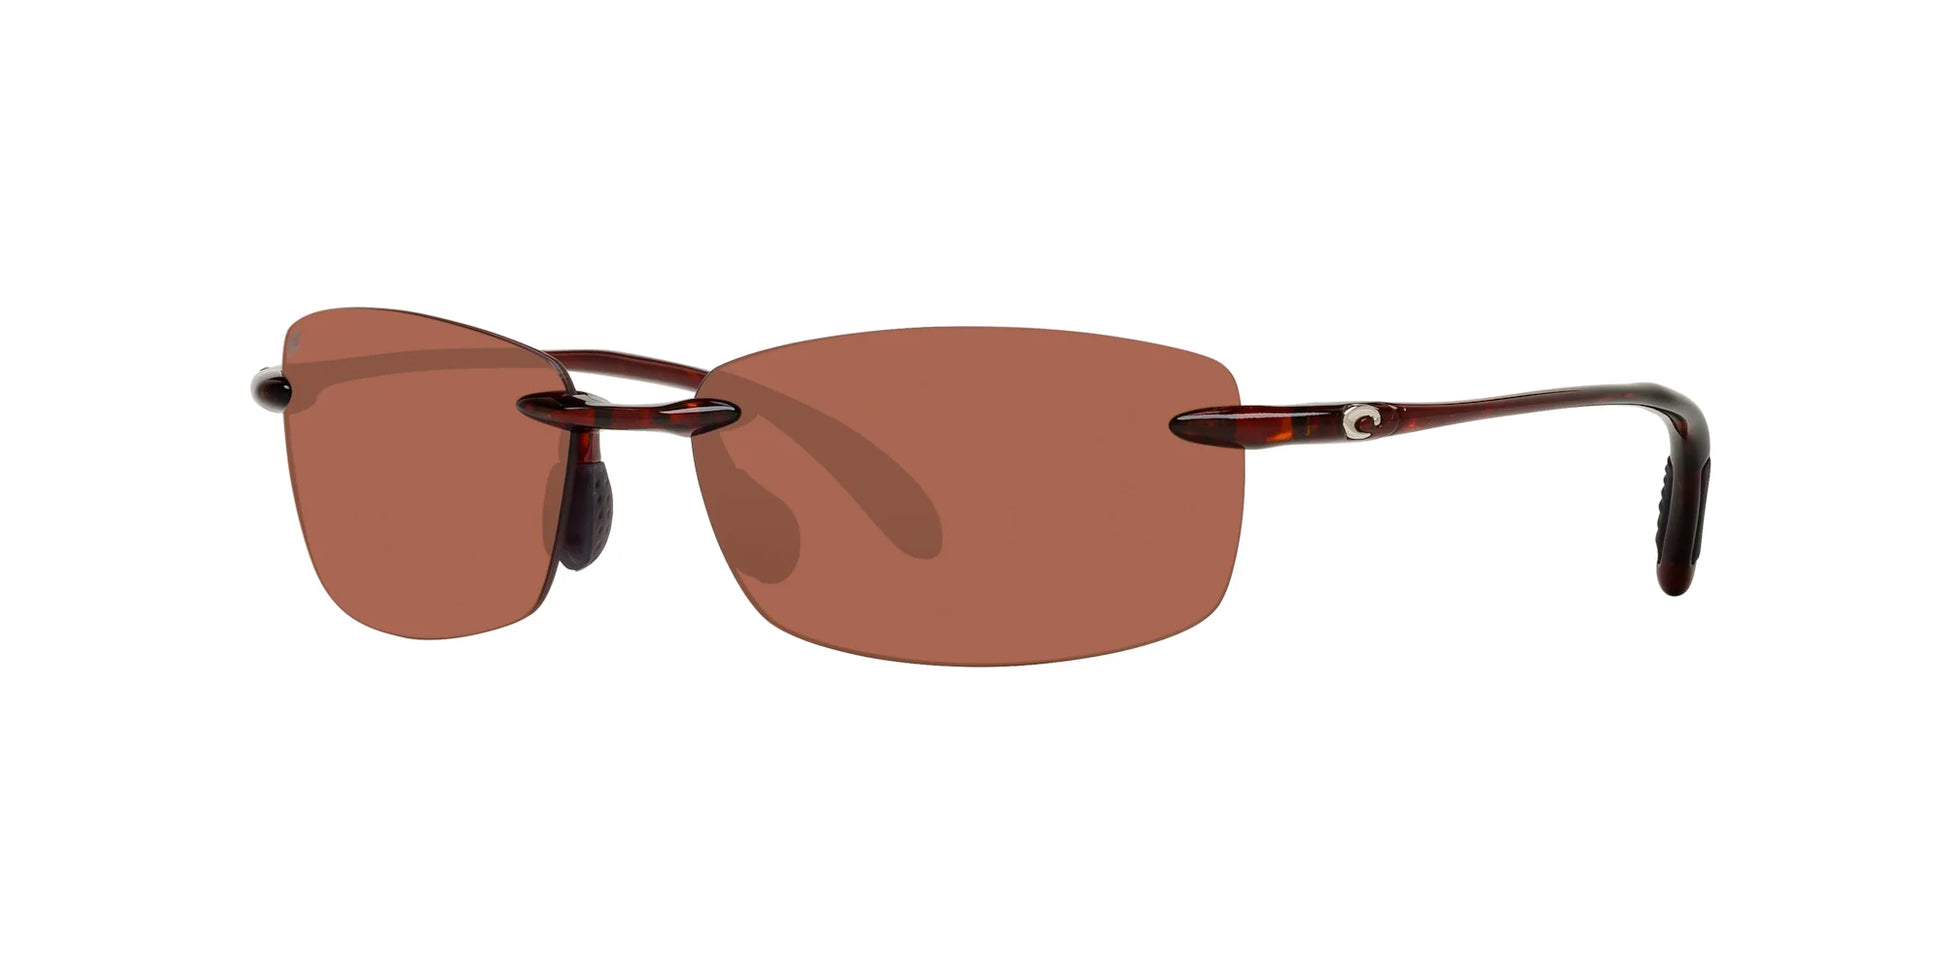 Costa BALLAST READERS 6S7002 Sunglasses Tortoise / Copper